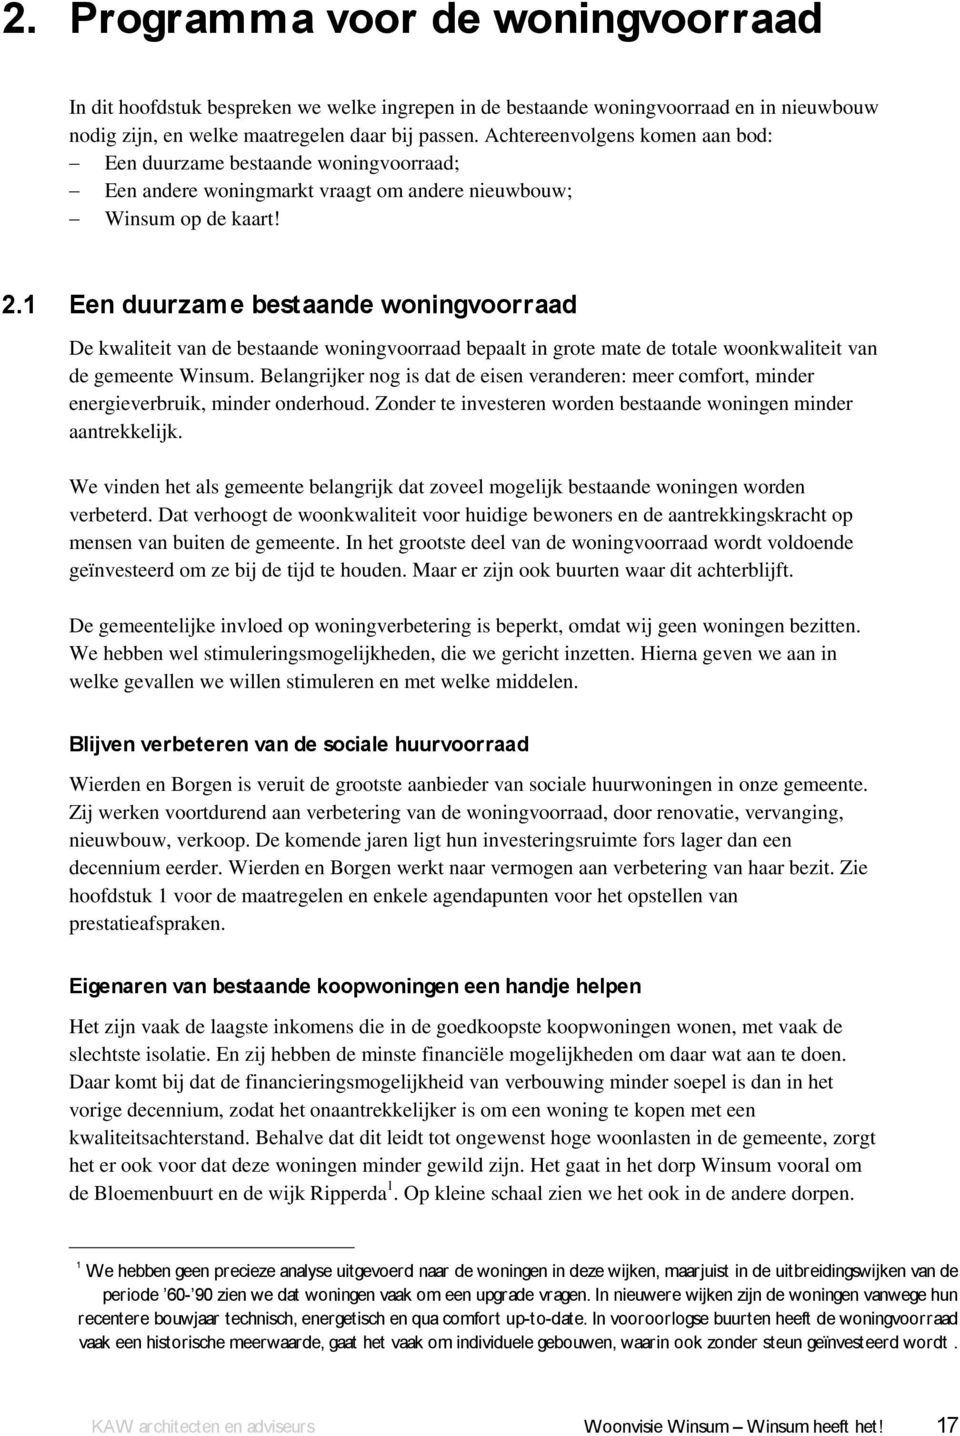 1 Een duurzame bestaande woningvoorraad De kwaliteit van de bestaande woningvoorraad bepaalt in grote mate de totale woonkwaliteit van de gemeente Winsum.